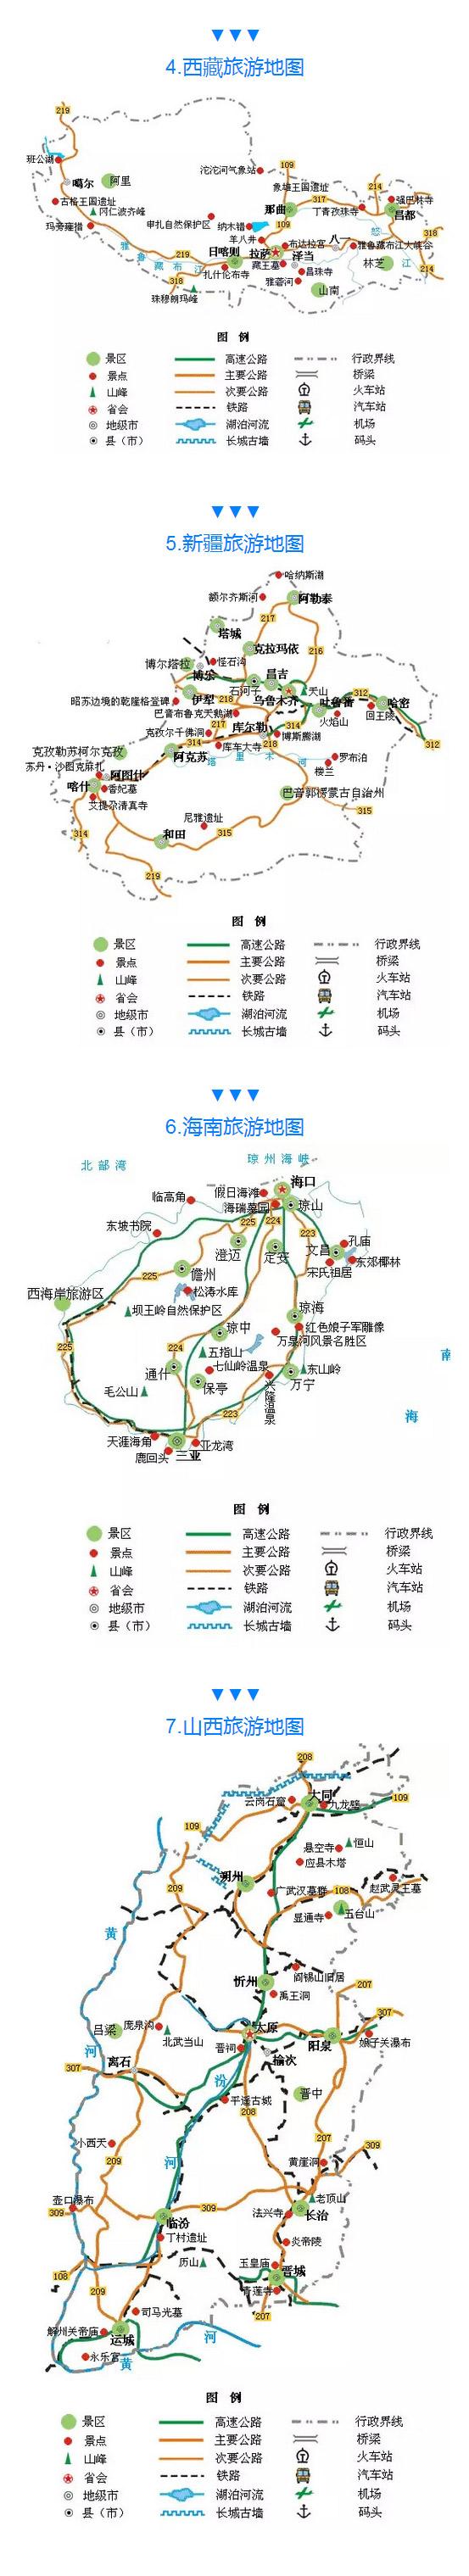 全国旅游路线图(中国最全旅游路线图 各大景点一目了然)